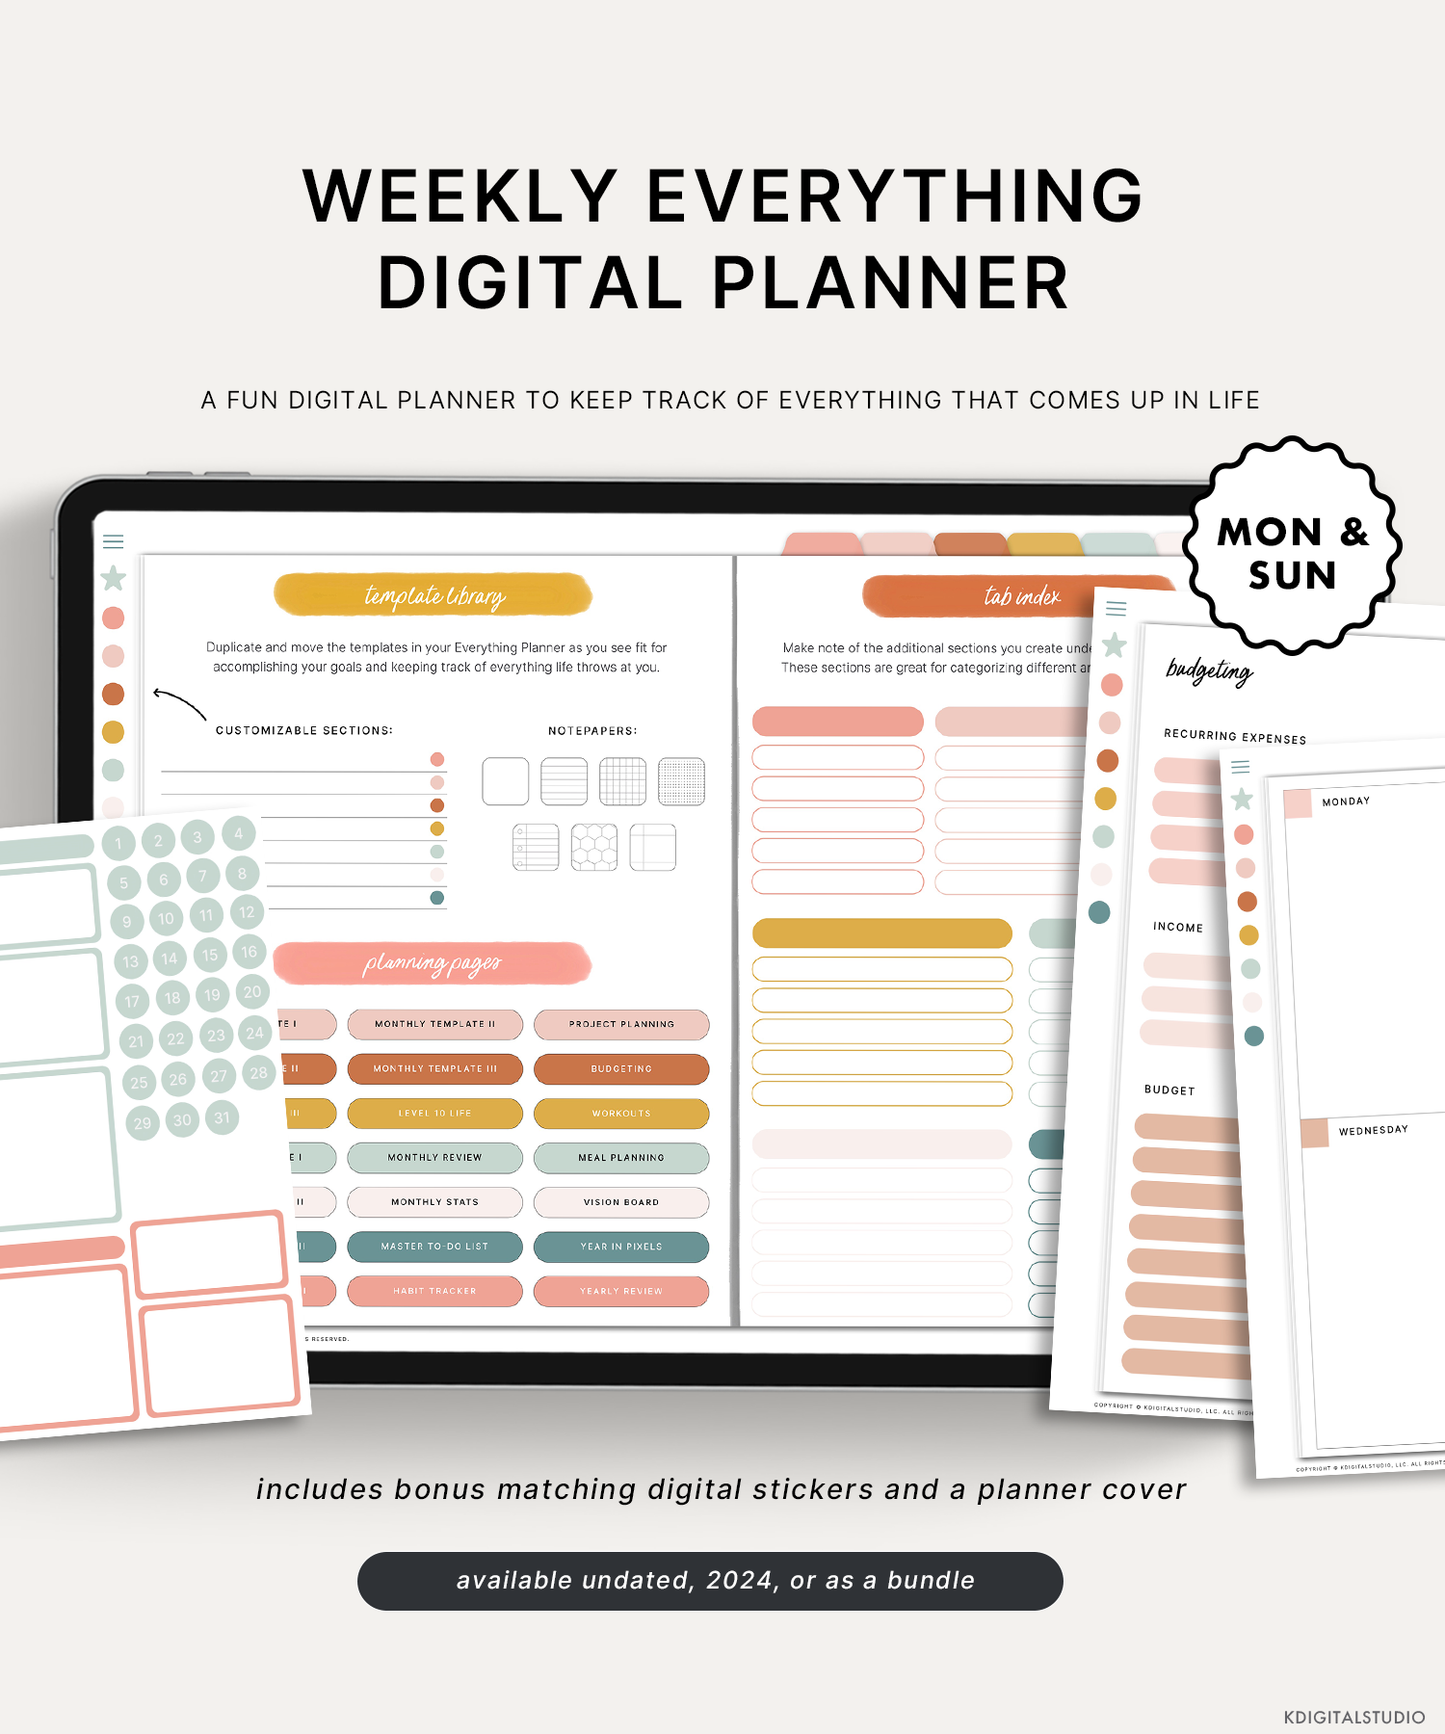 Weekly Everything Digital Planner